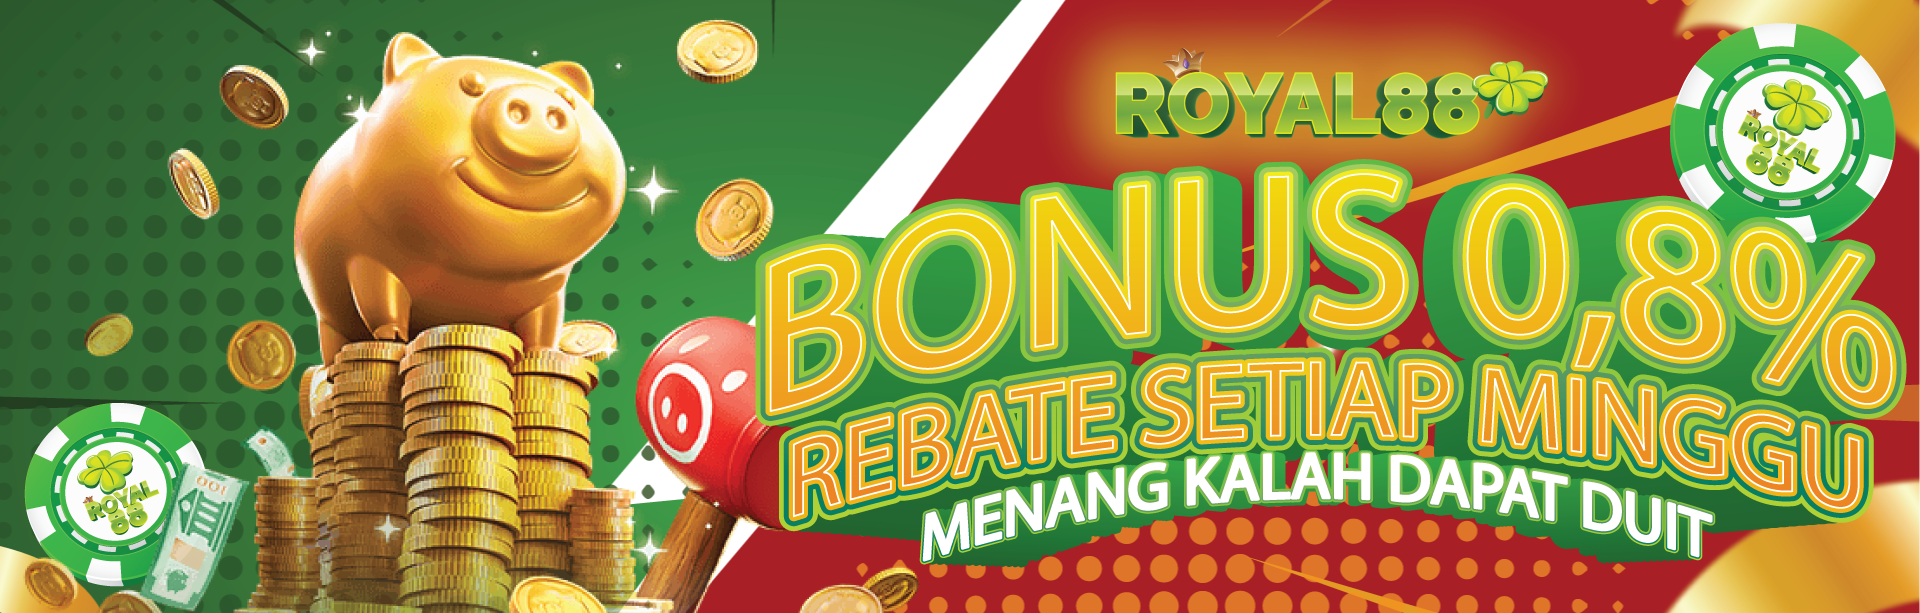 Bonus Rollingan /Rebate 0.8%